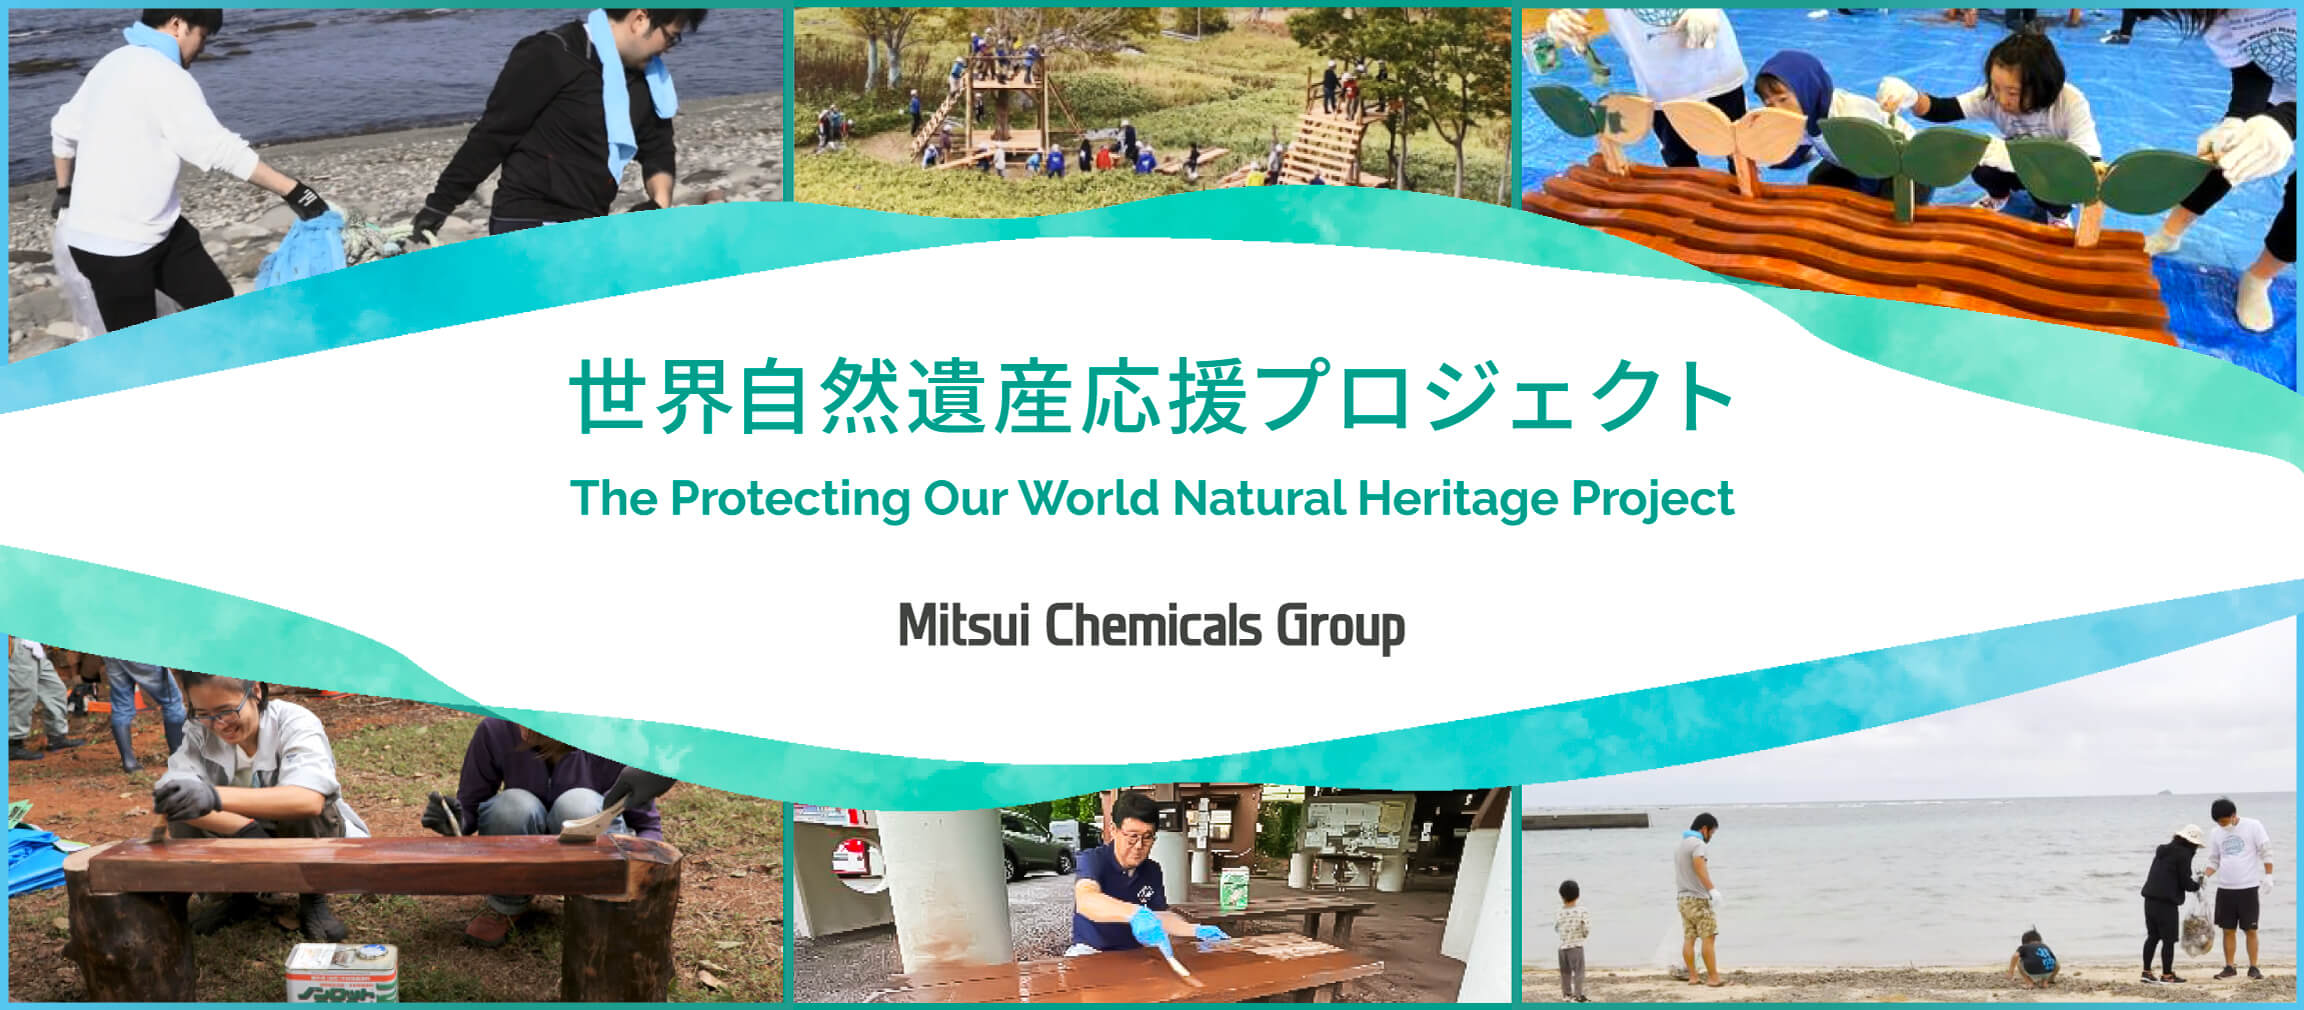 三井化学グループ 世界自然遺産応援プロジェクト | The Protecting Our World Natural Heritage Project